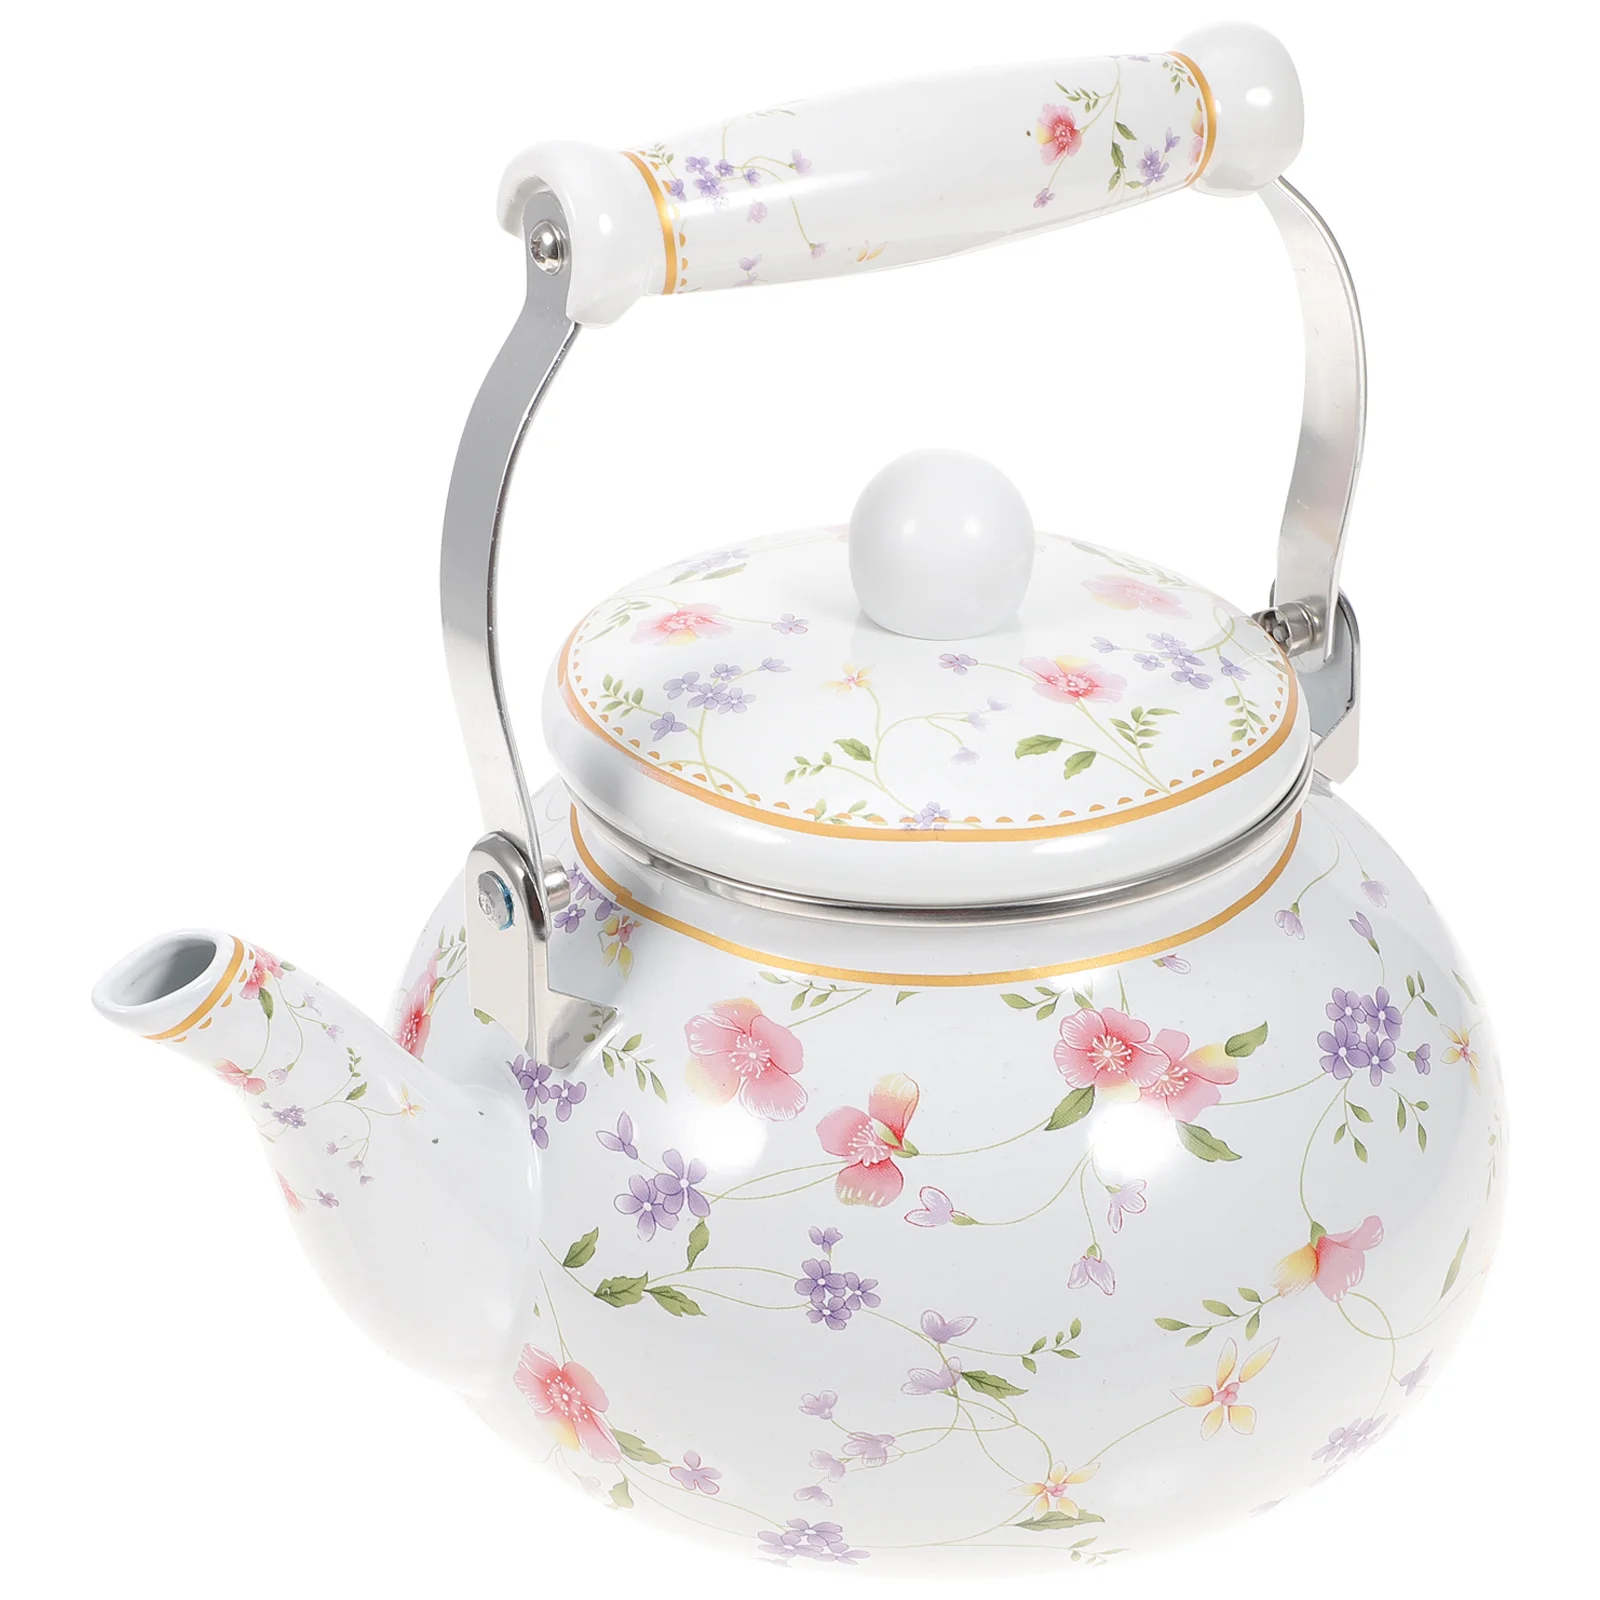 

Enamel Tea Kettle 1.5L Porcelain Teapot Stovetop Decorative Teapot Strainer Cool Handle Vintage Floral Teapot Hot Water Tea